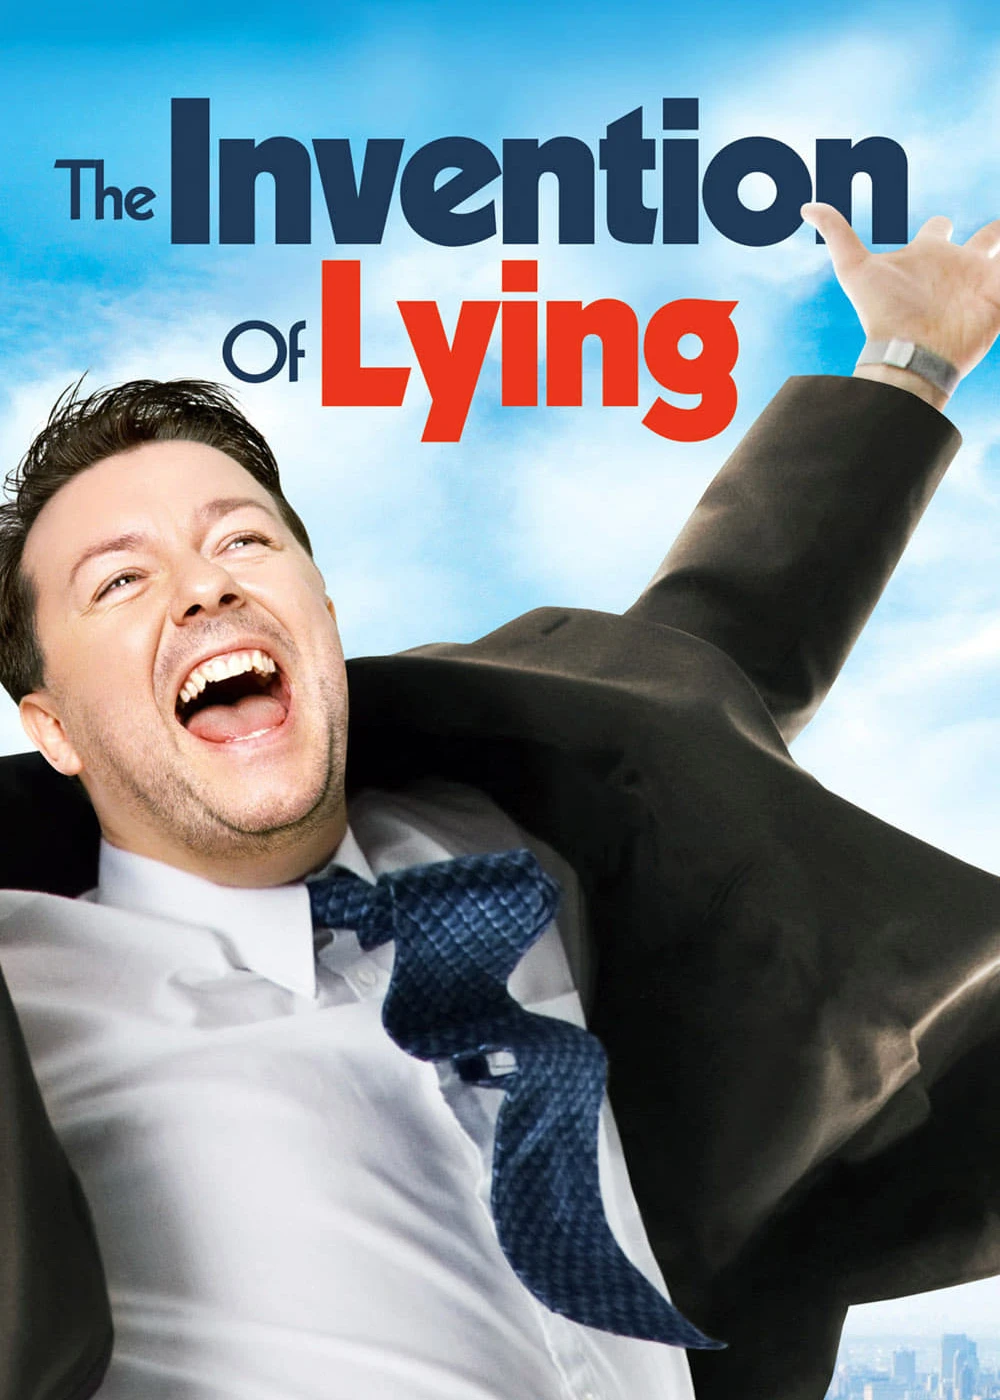 The Invention of Lying | The Invention of Lying (2009)